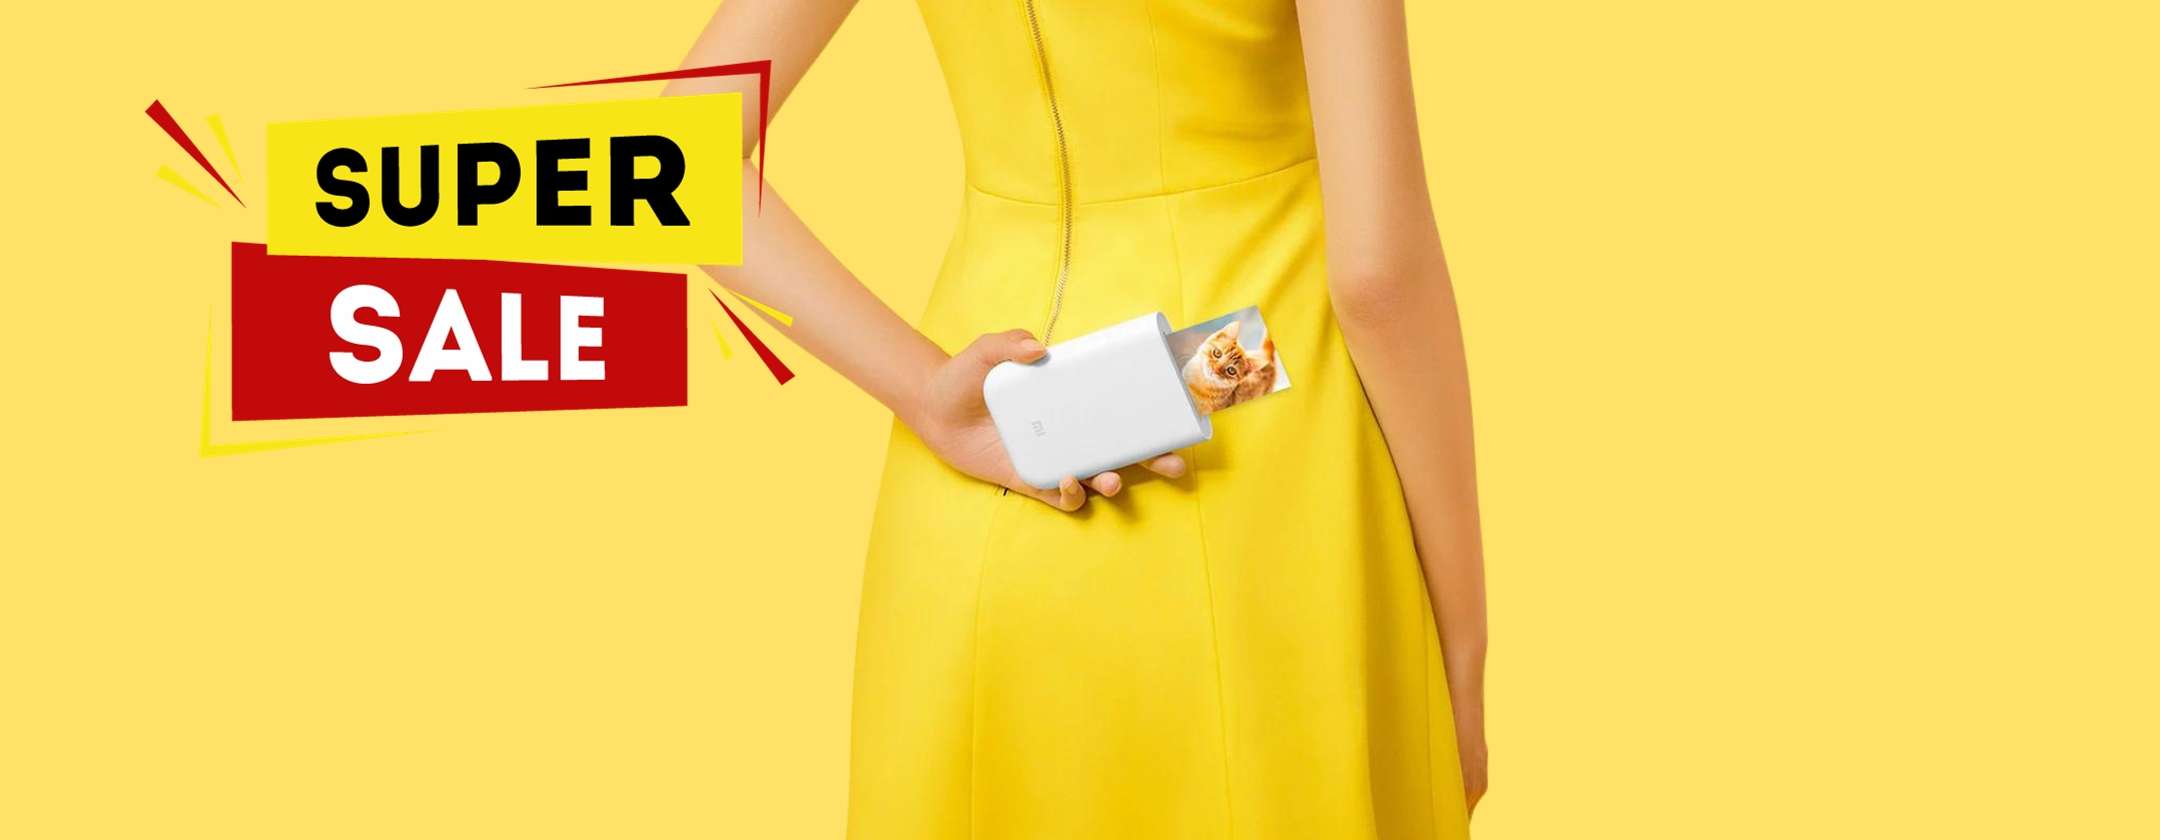 Mini Stampante Portatile Xiaomi: OGGI in OFFERTA BOMBA